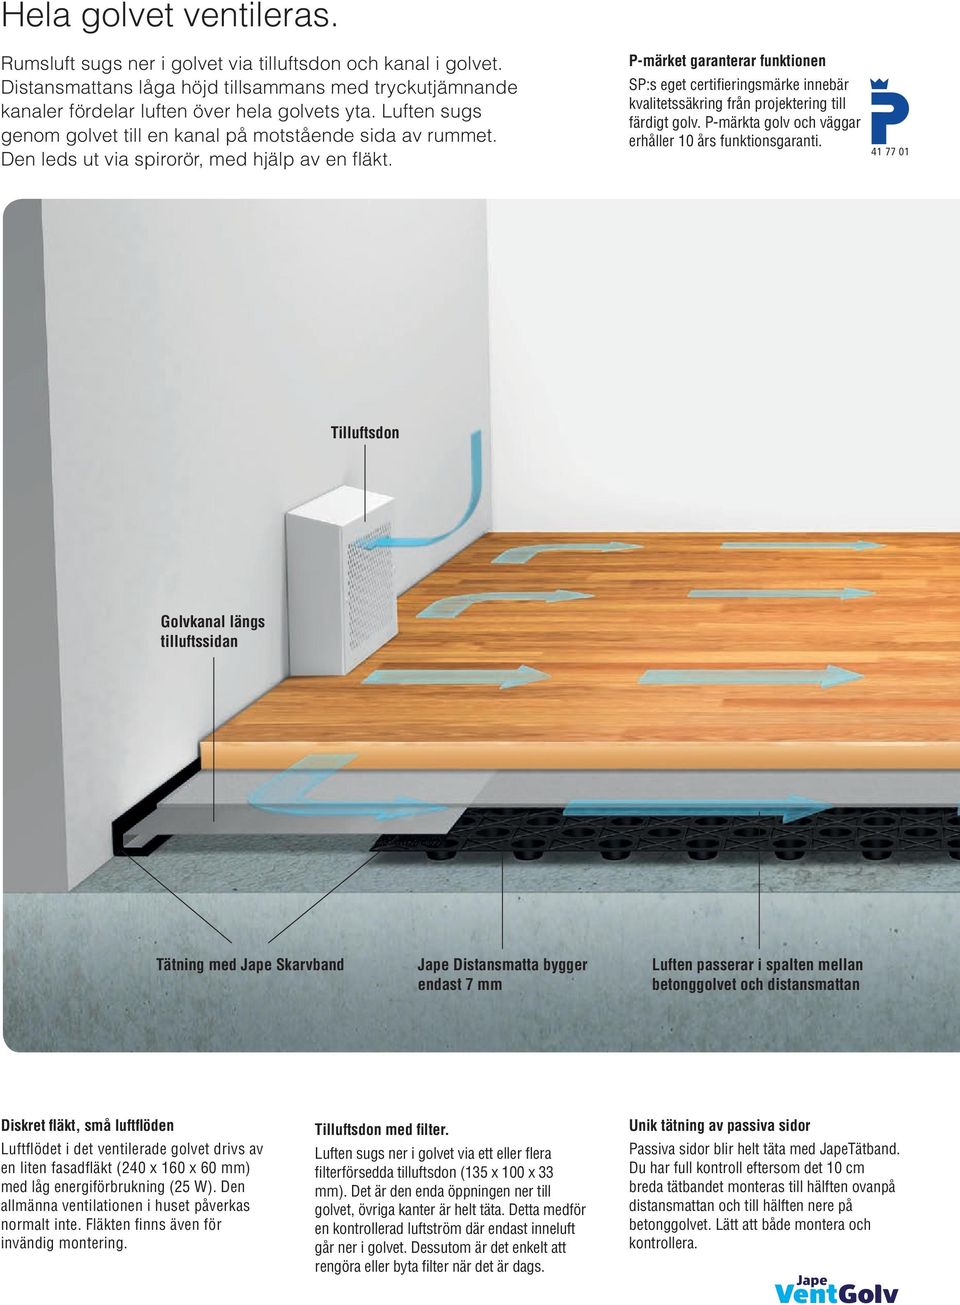 Hur du åtgärdar fukt, lukt och radon i golvet. - PDF Free Download